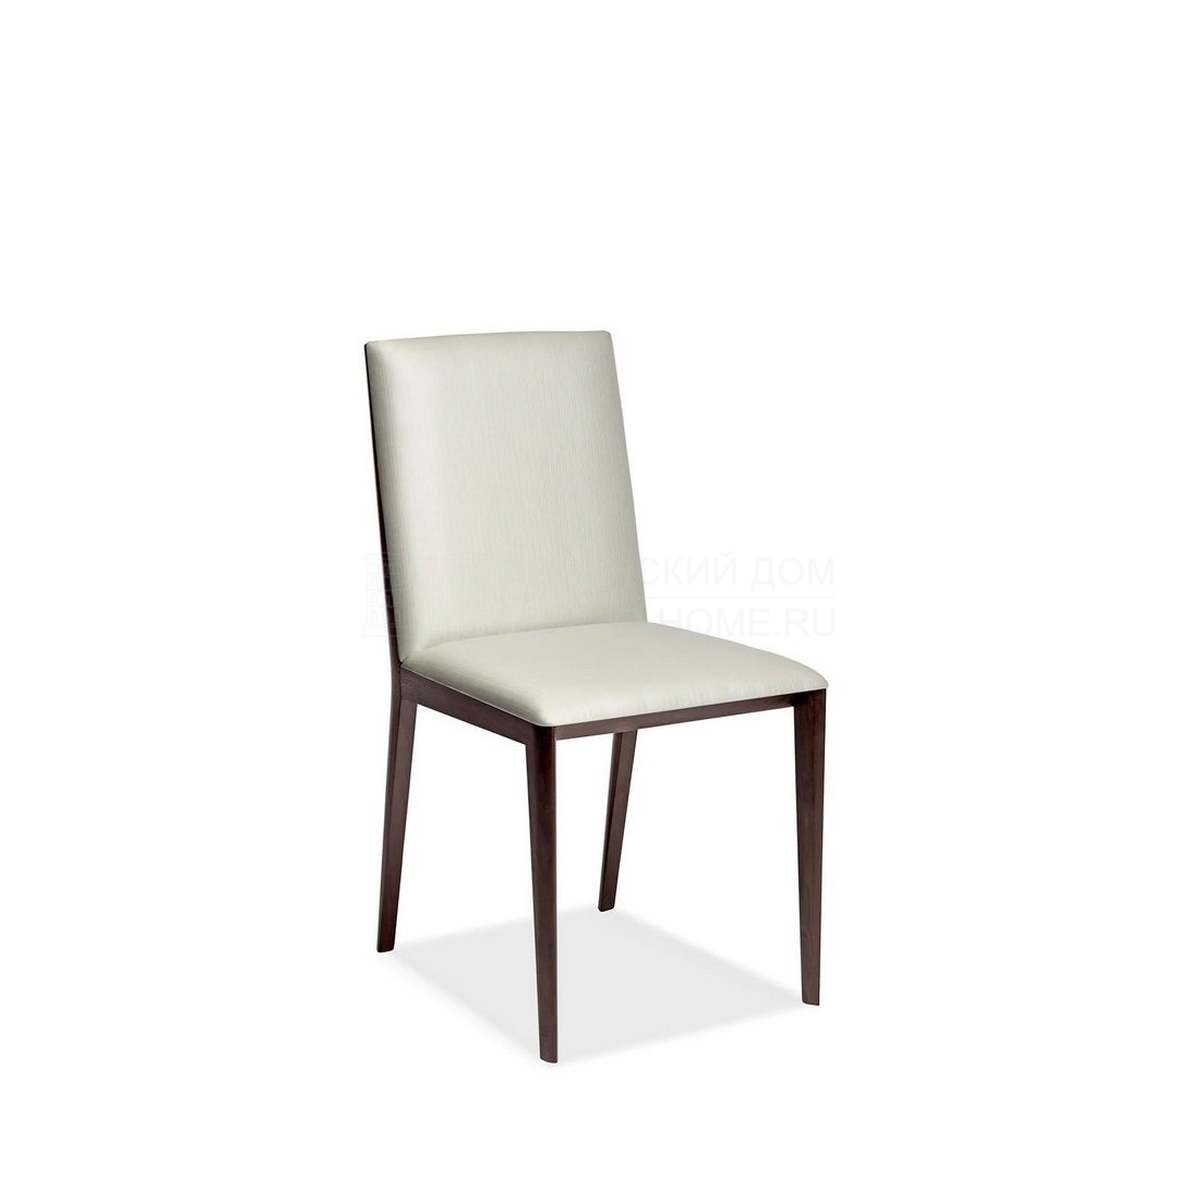 Стул Omage chair without armrests из Италии фабрики ARMANI CASA